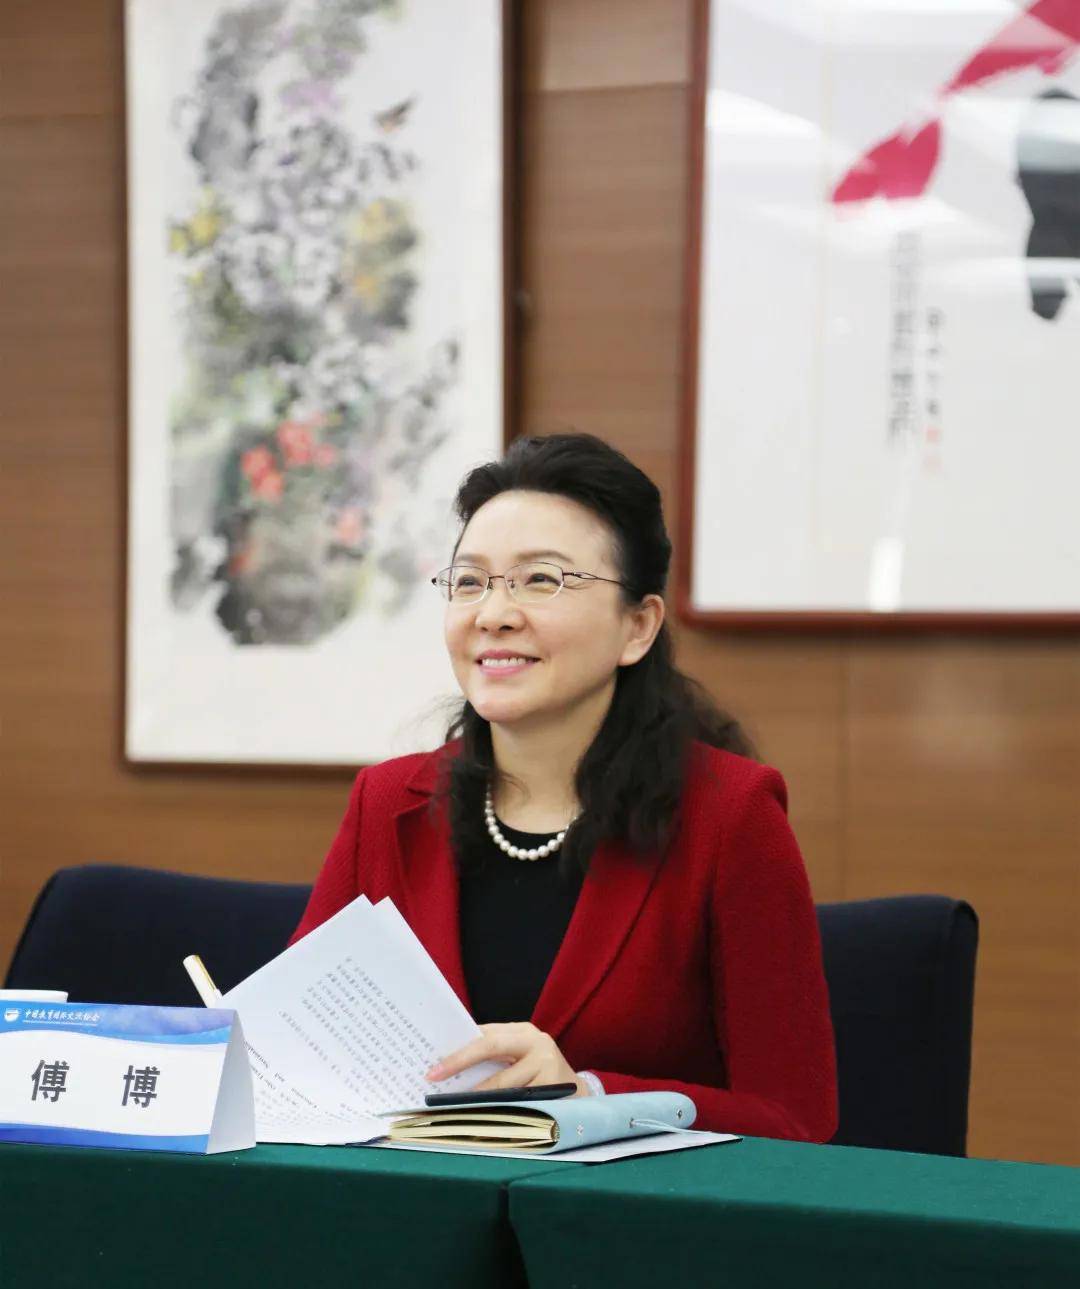  中国教诲国际交换协会在京召开媒体座谈会